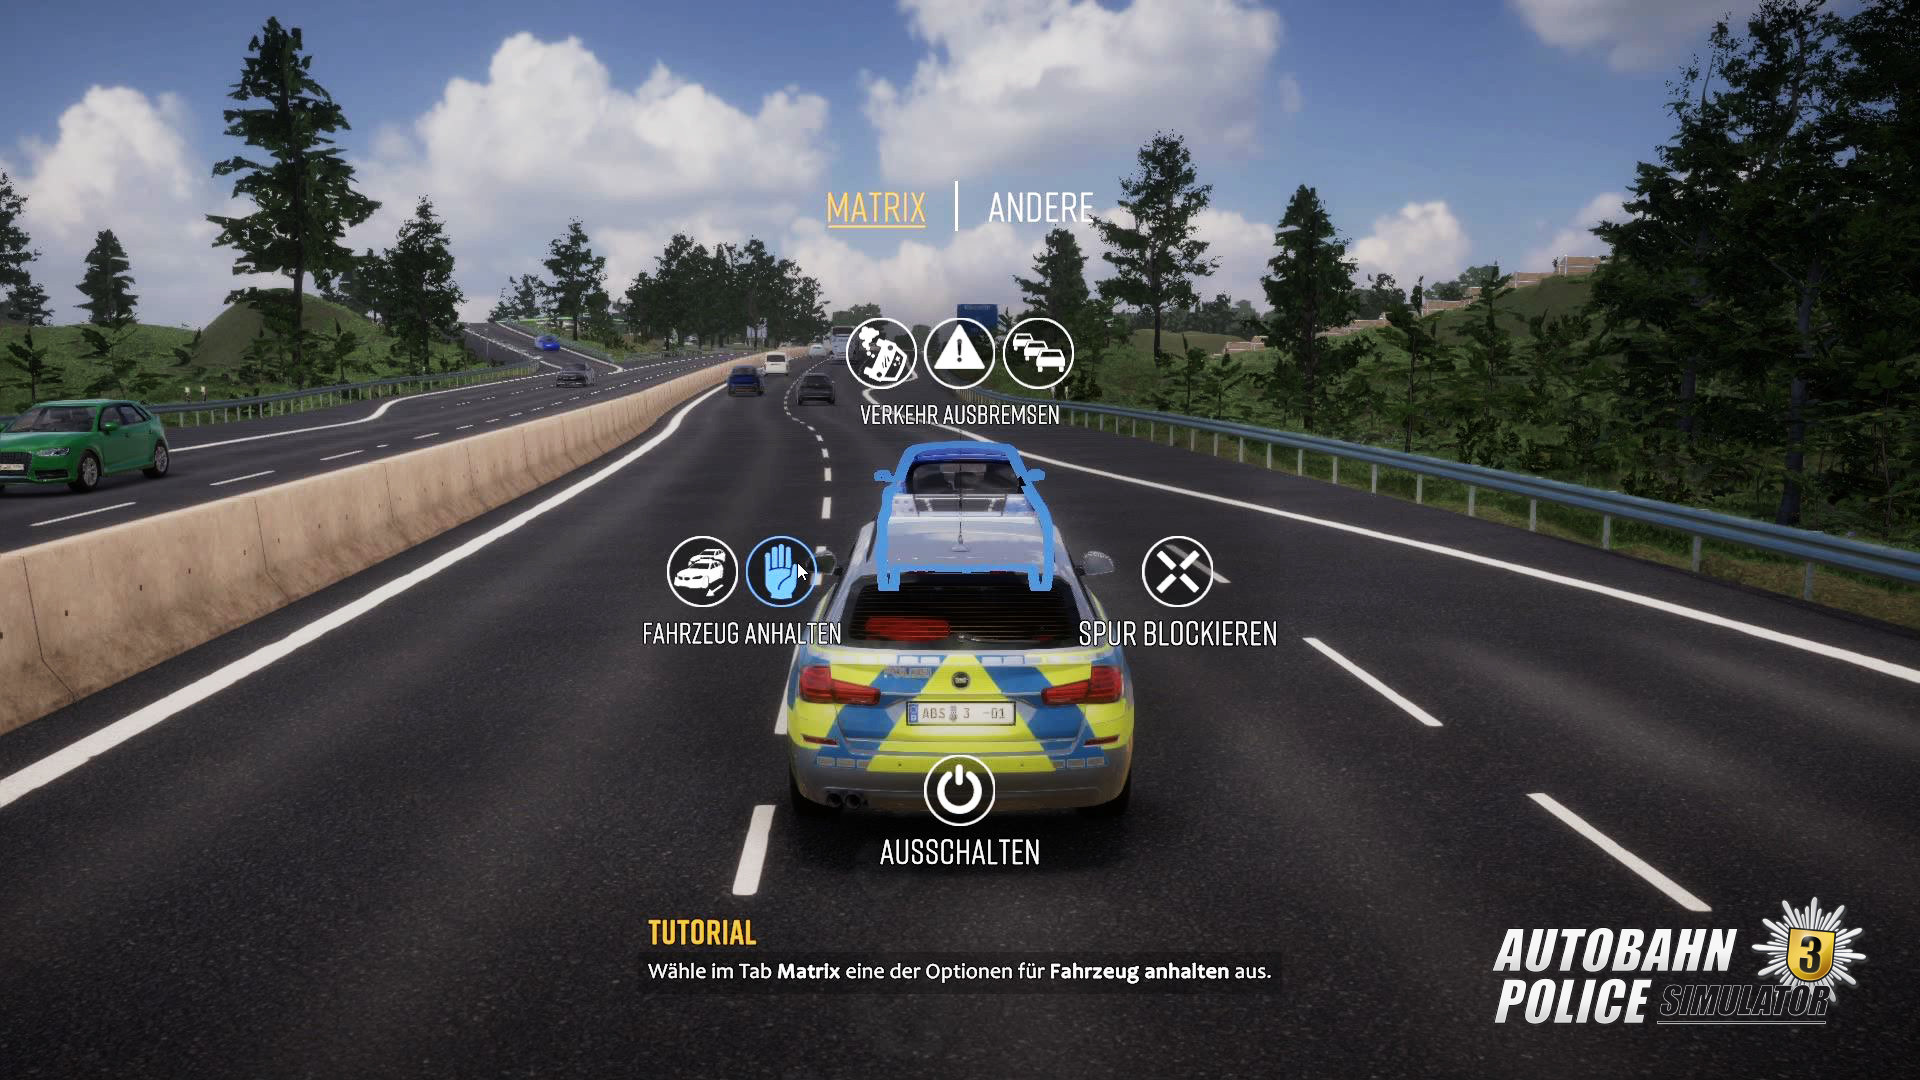 Autobahn Police Simulator 3 on Steam